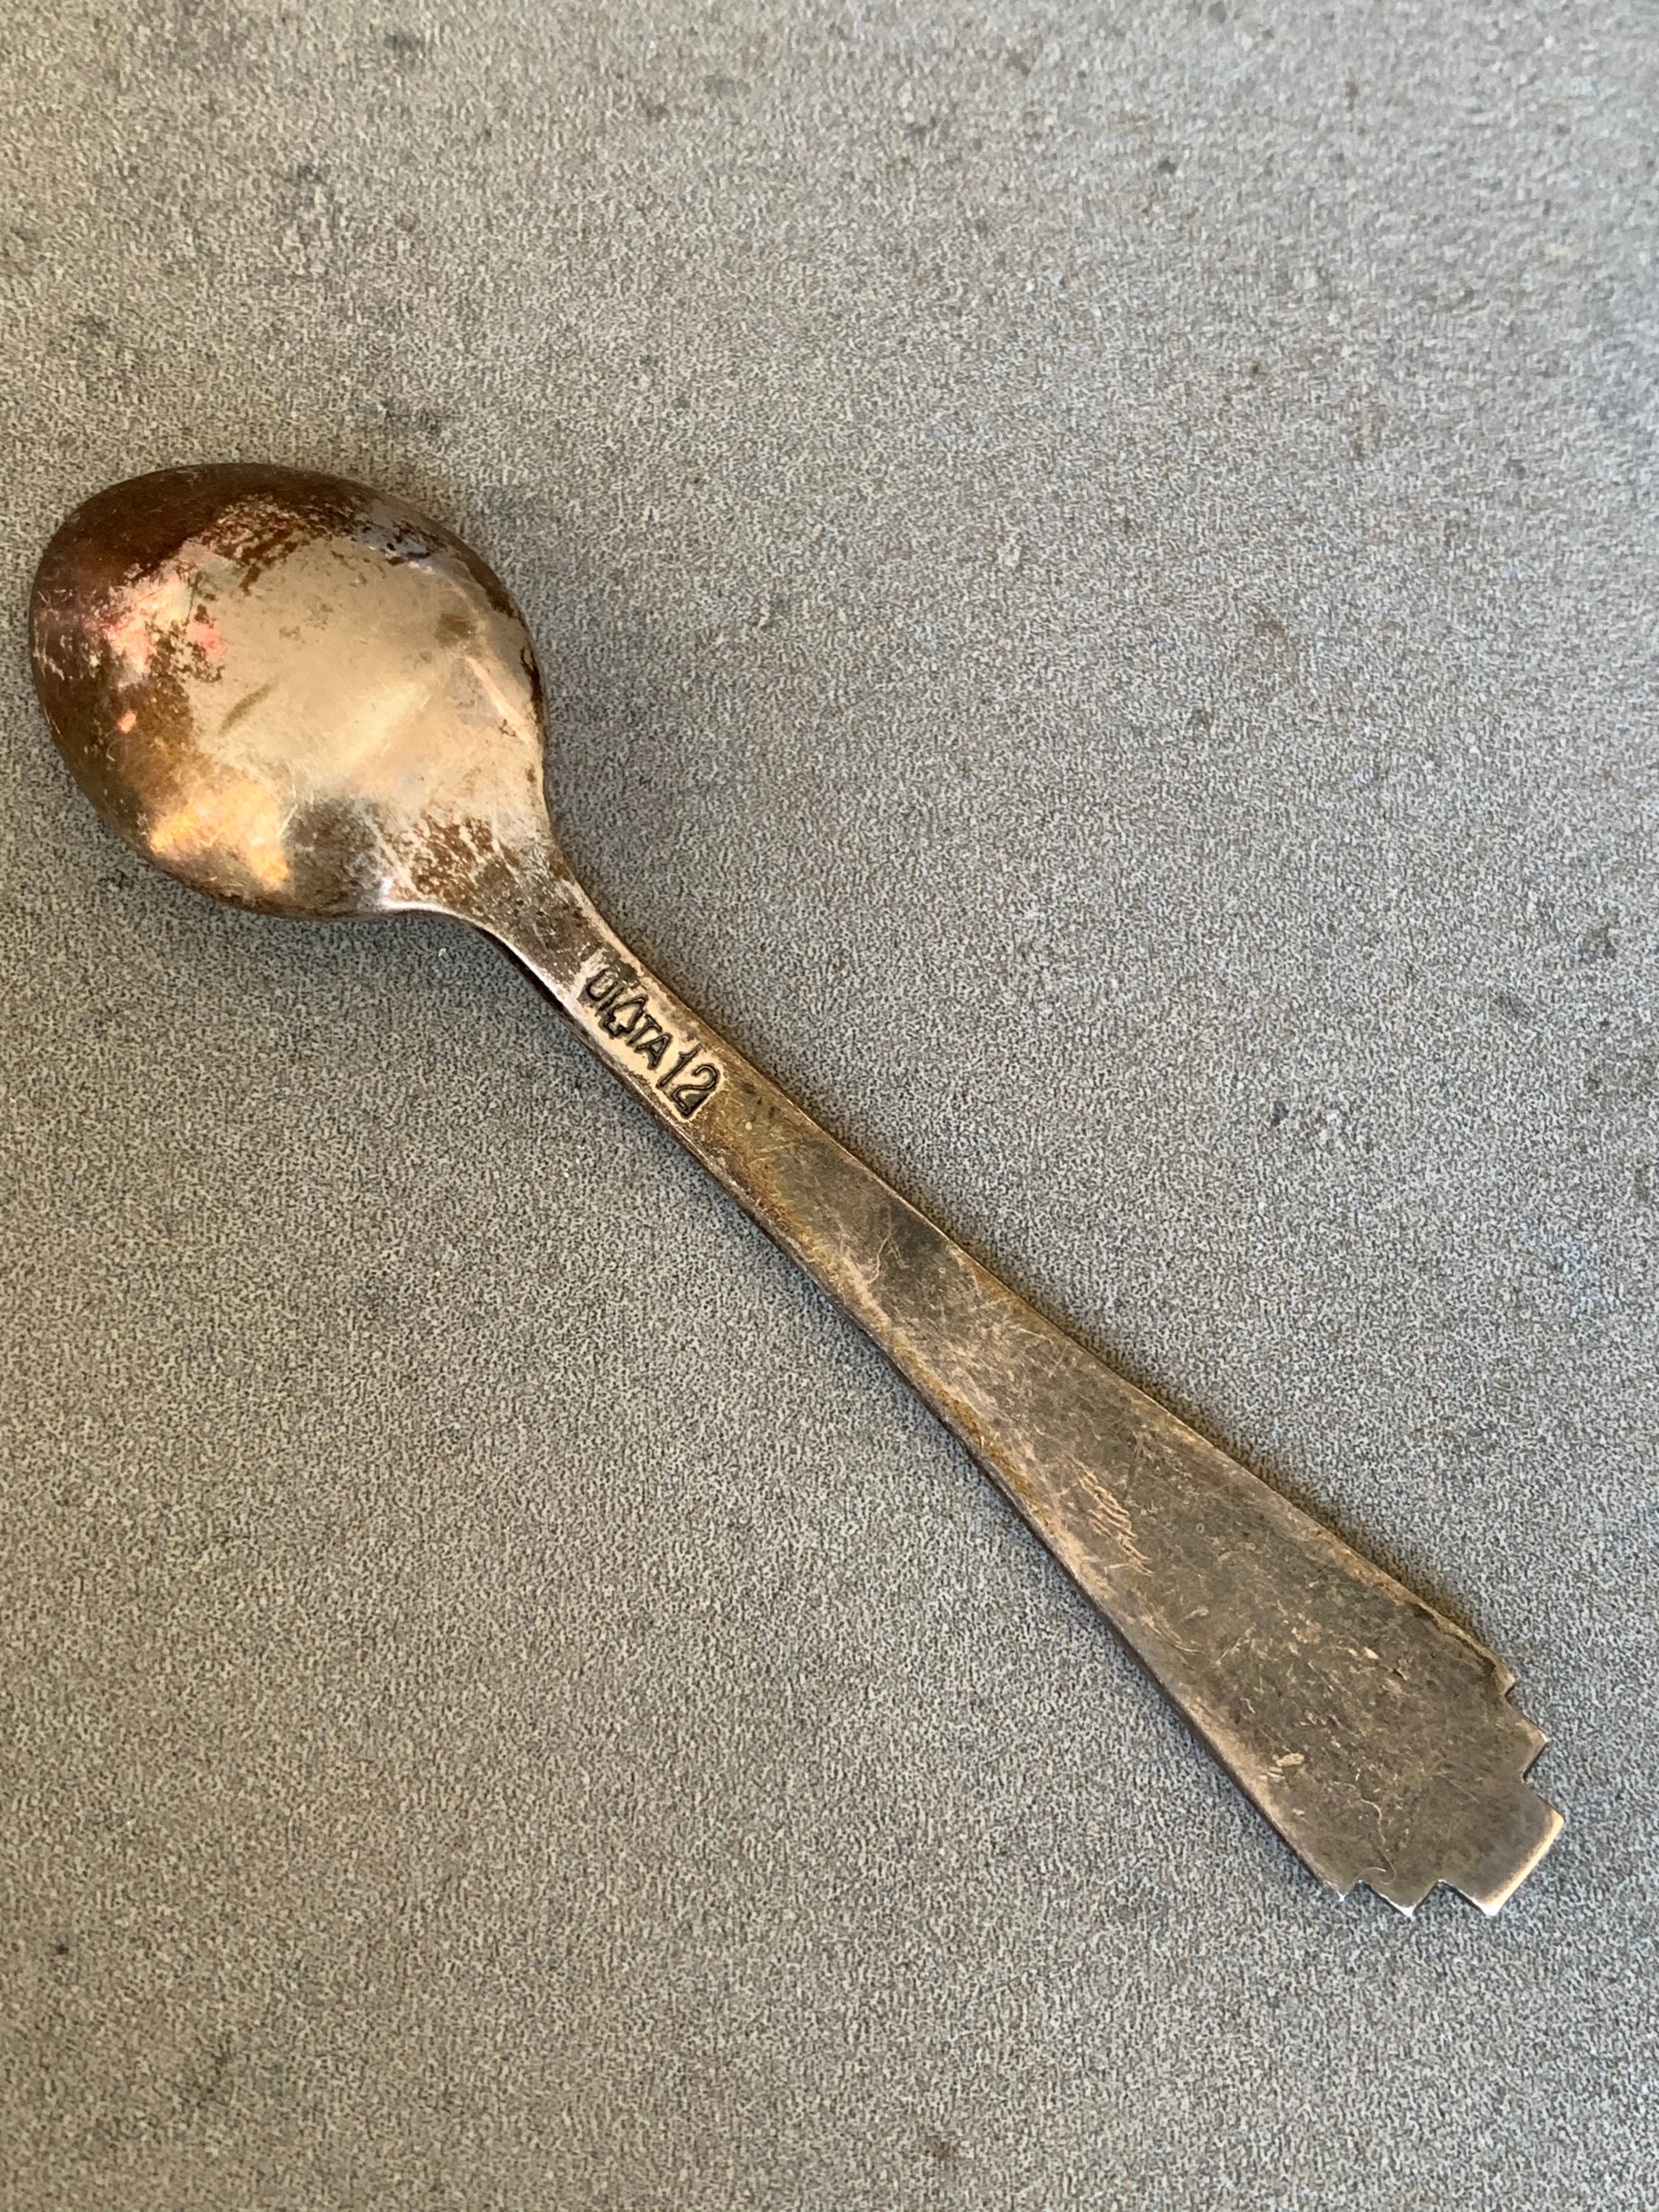 Packards UITA 12 Sterling Spoon